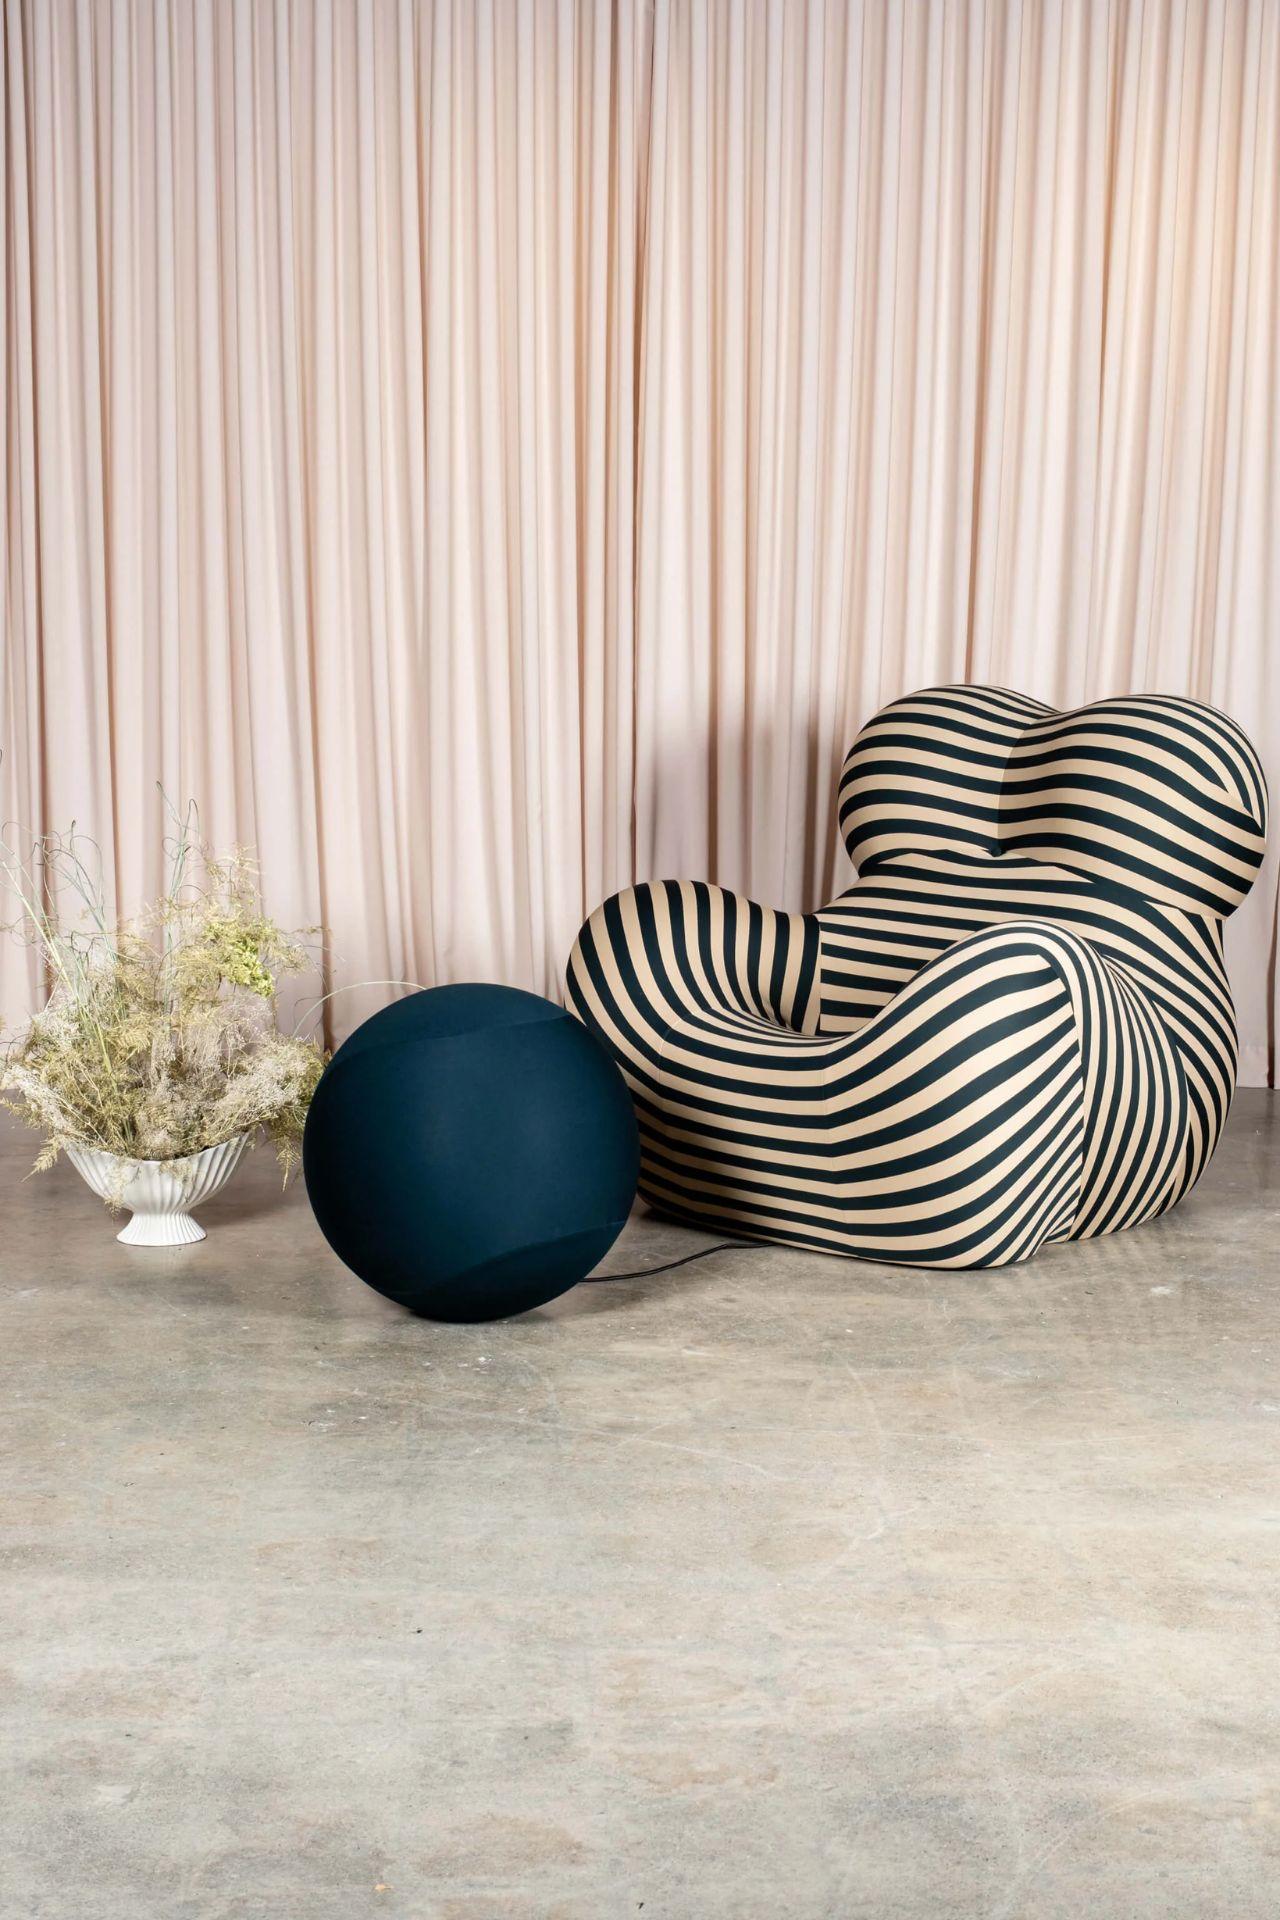 Seit ihrem ersten Erscheinen ist die 1969 von Gaetano Pesce entworfene Up-Serie eines der meistdiskutierten Beispiele für modernes Möbeldesign. Die außergewöhnliche visuelle Wirkung von sechs Modellen kugelförmiger Sitze in verschiedenen Größen, die